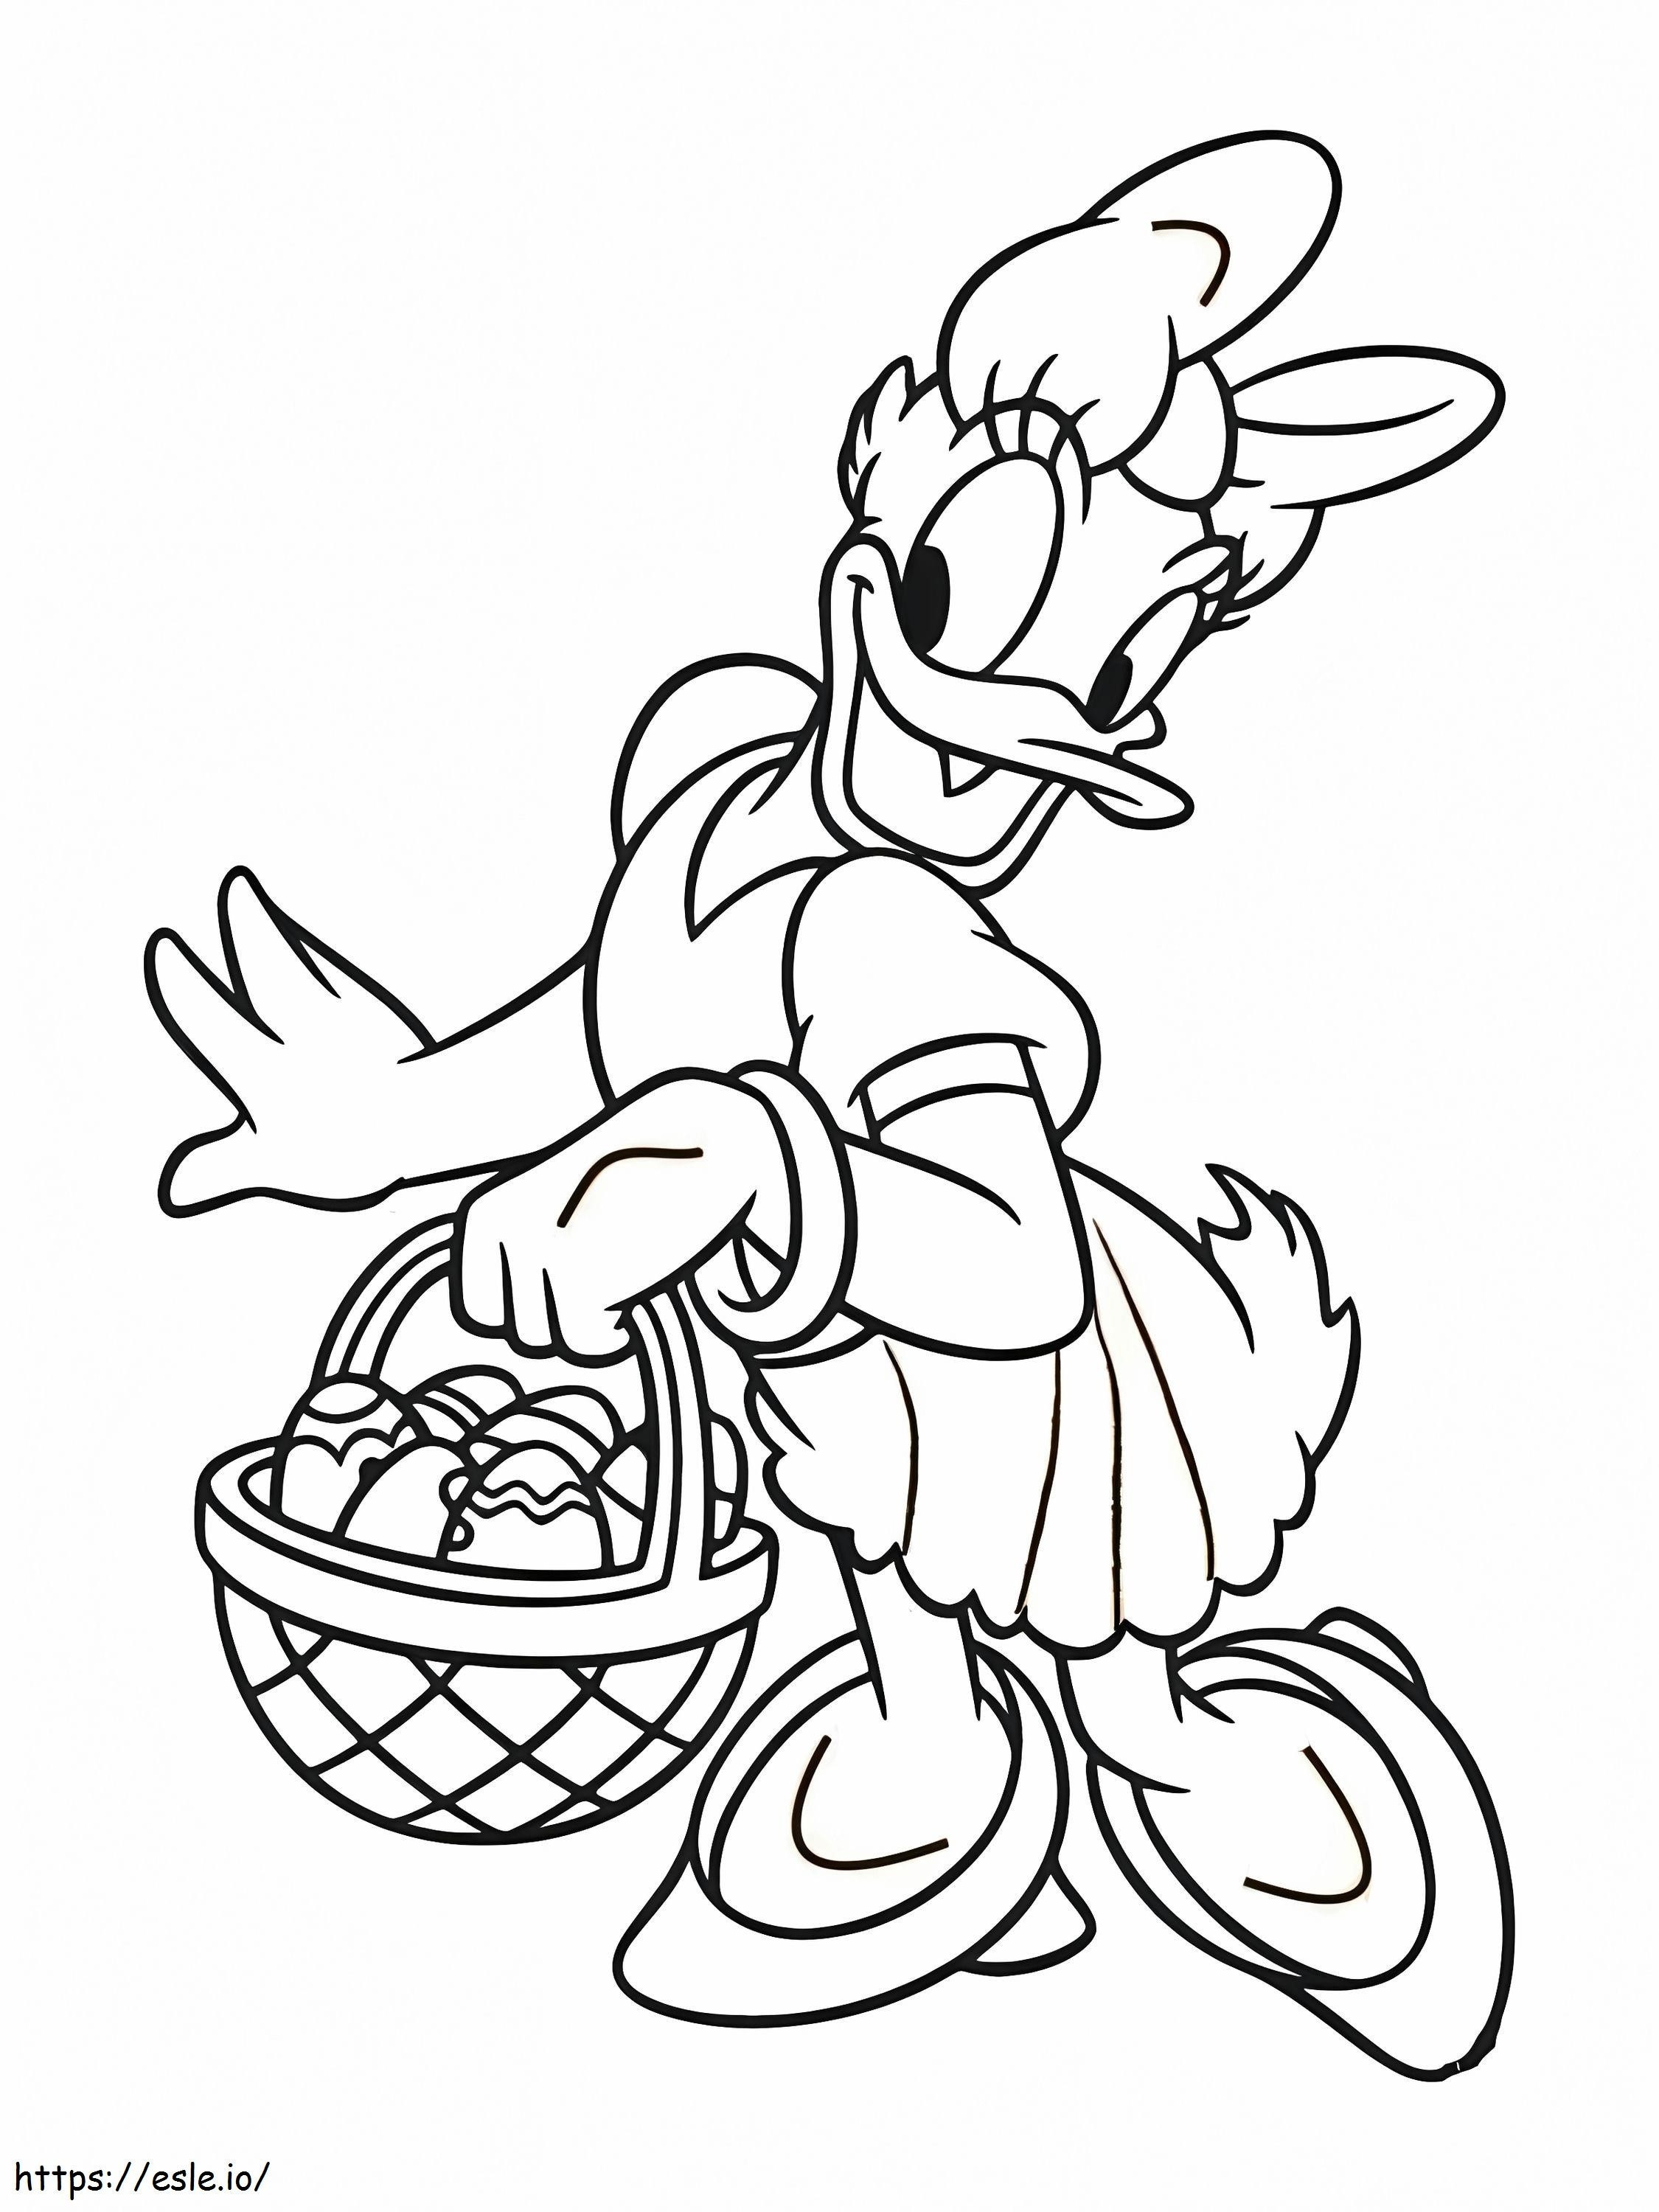 Pato Margarita llevando una cesta para colorear